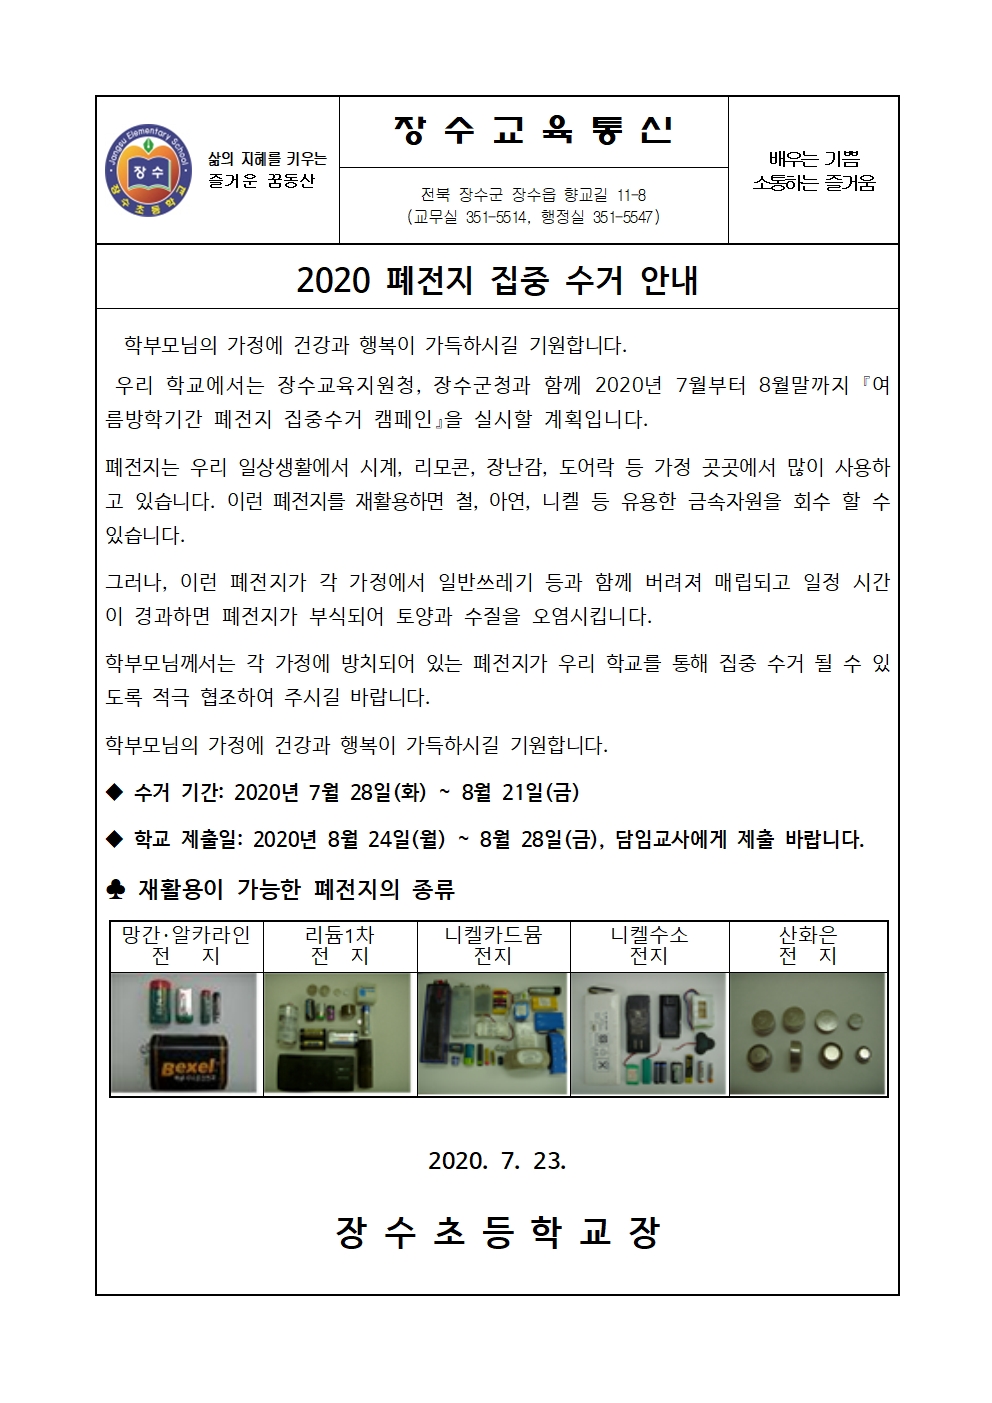 200723 붙임- 2020 폐전지 수거 안내장001